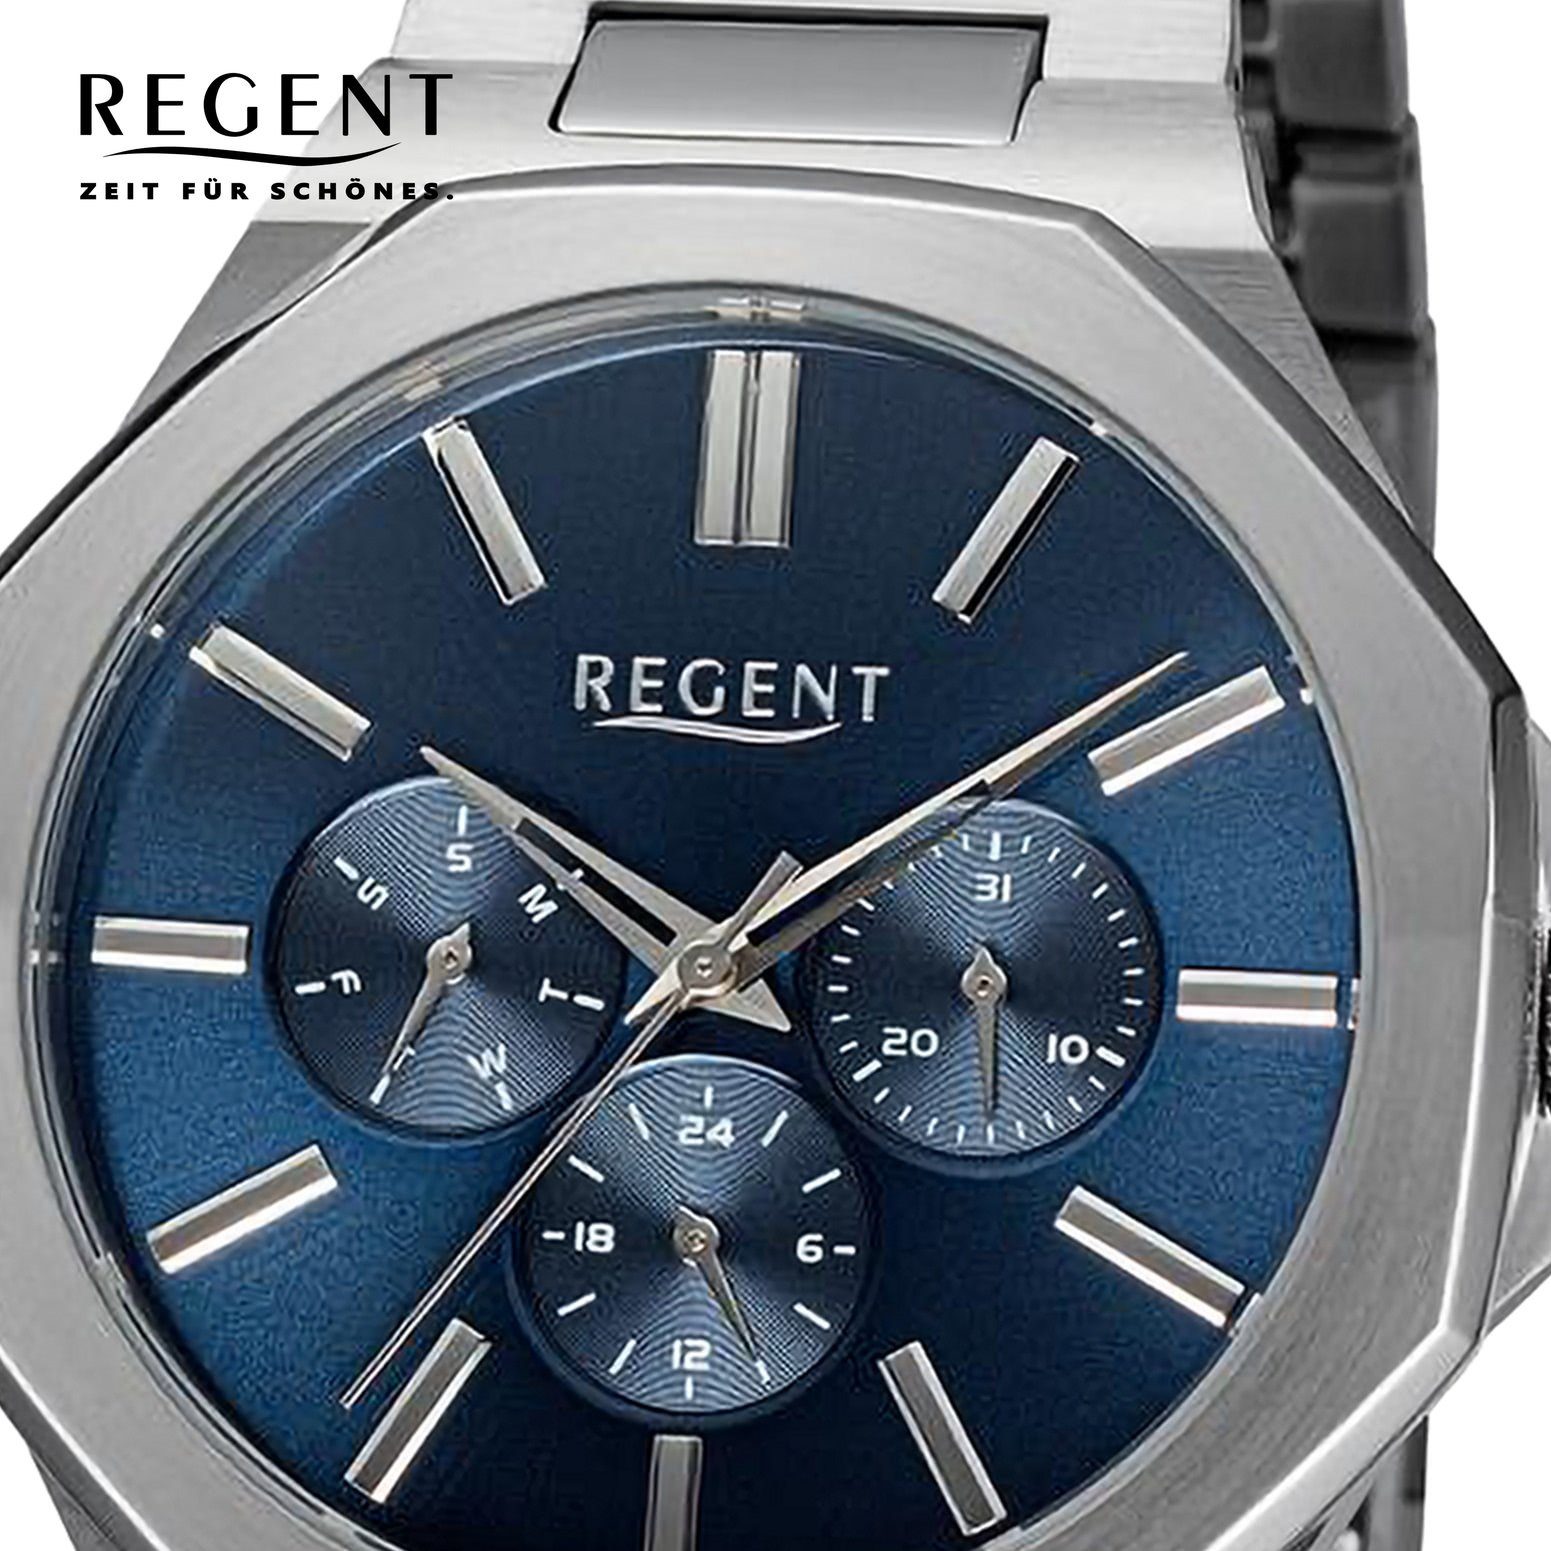 42mm), Herren extra Quarzuhr Regent Analog, Herren Armbanduhr Armbanduhr (ca. Metallarmband Regent rund, groß